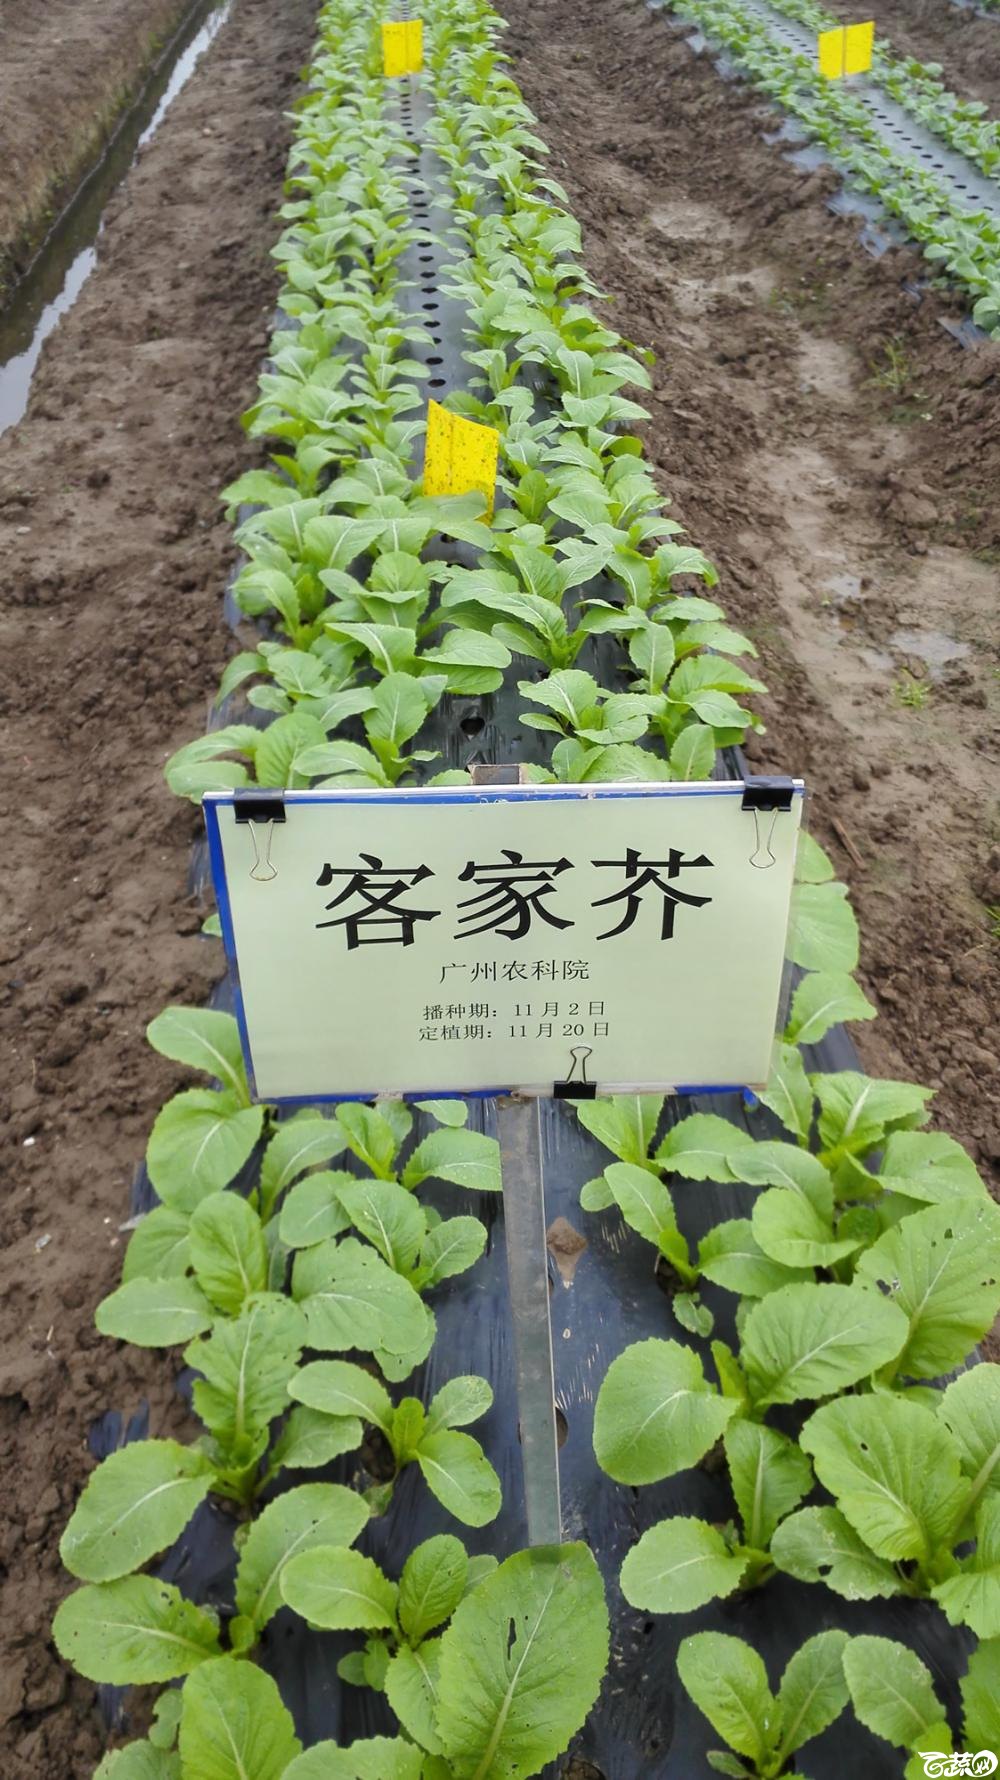 2014年12月8号中山蔬菜新品种展示会_叶菜_003.jpg